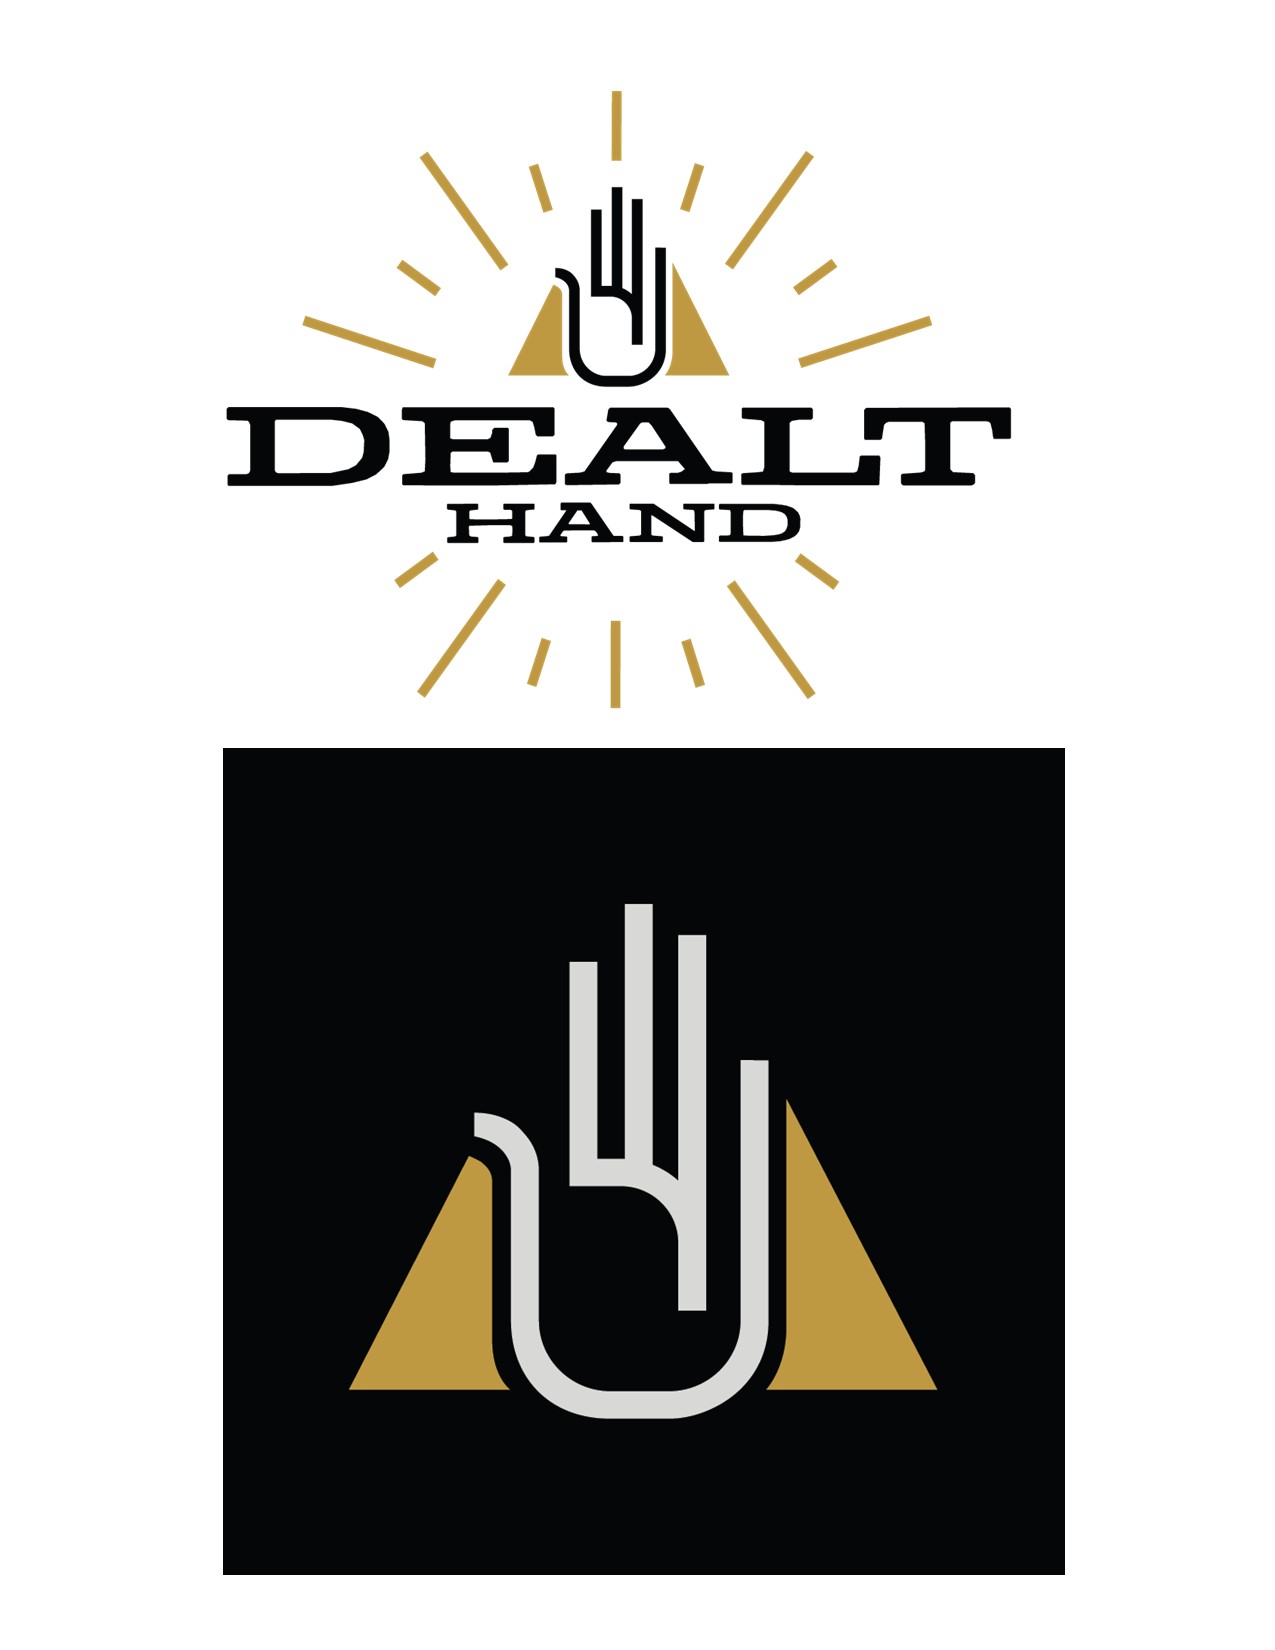 Dealt Hand logo